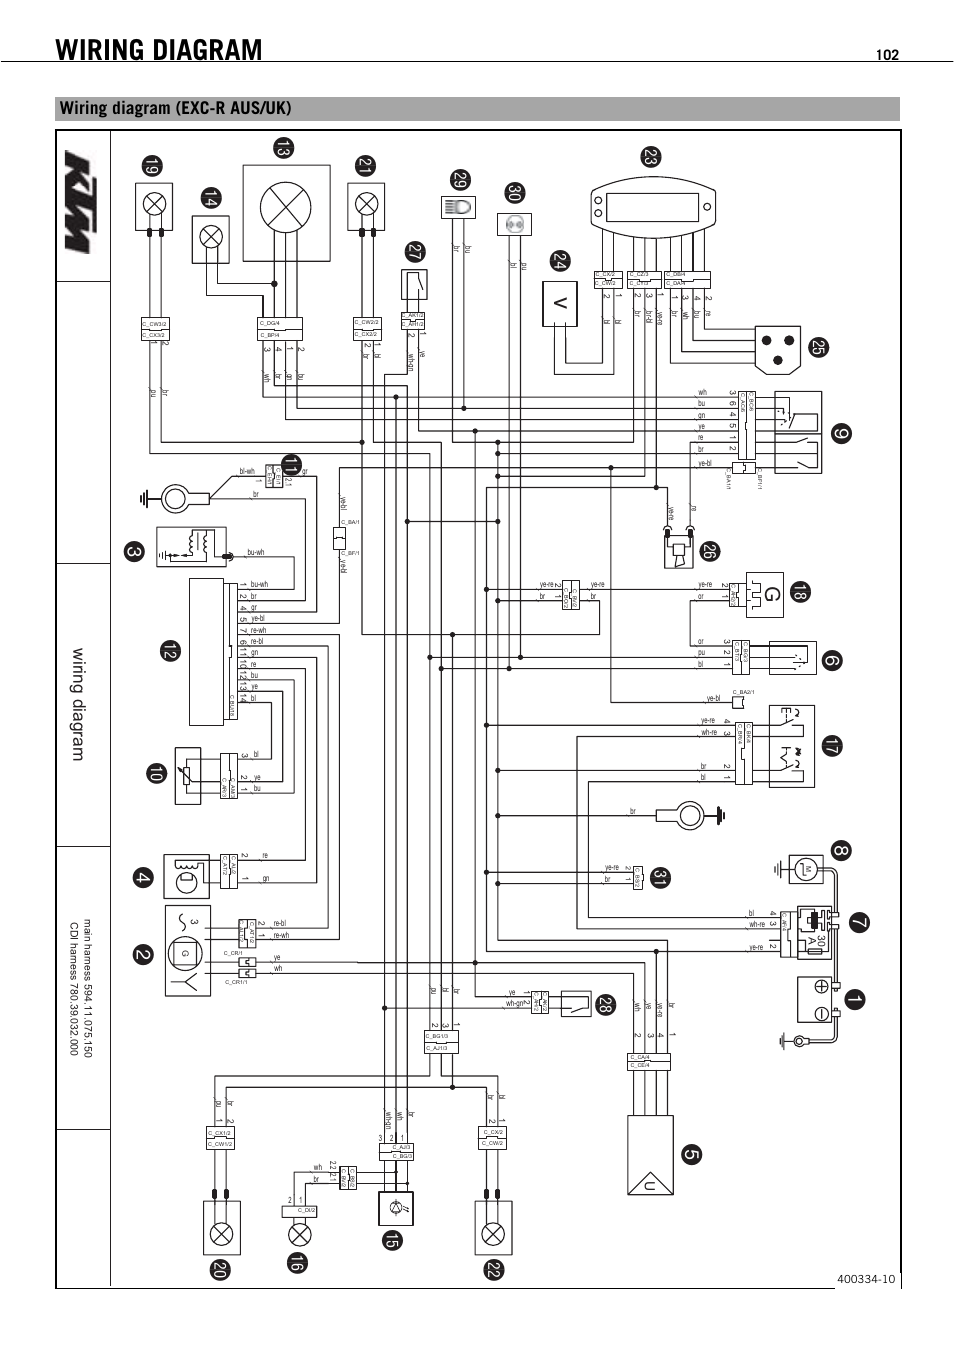 DIAGRAM Trailer Wiring 101 Wiring Diagram FULL Version ...